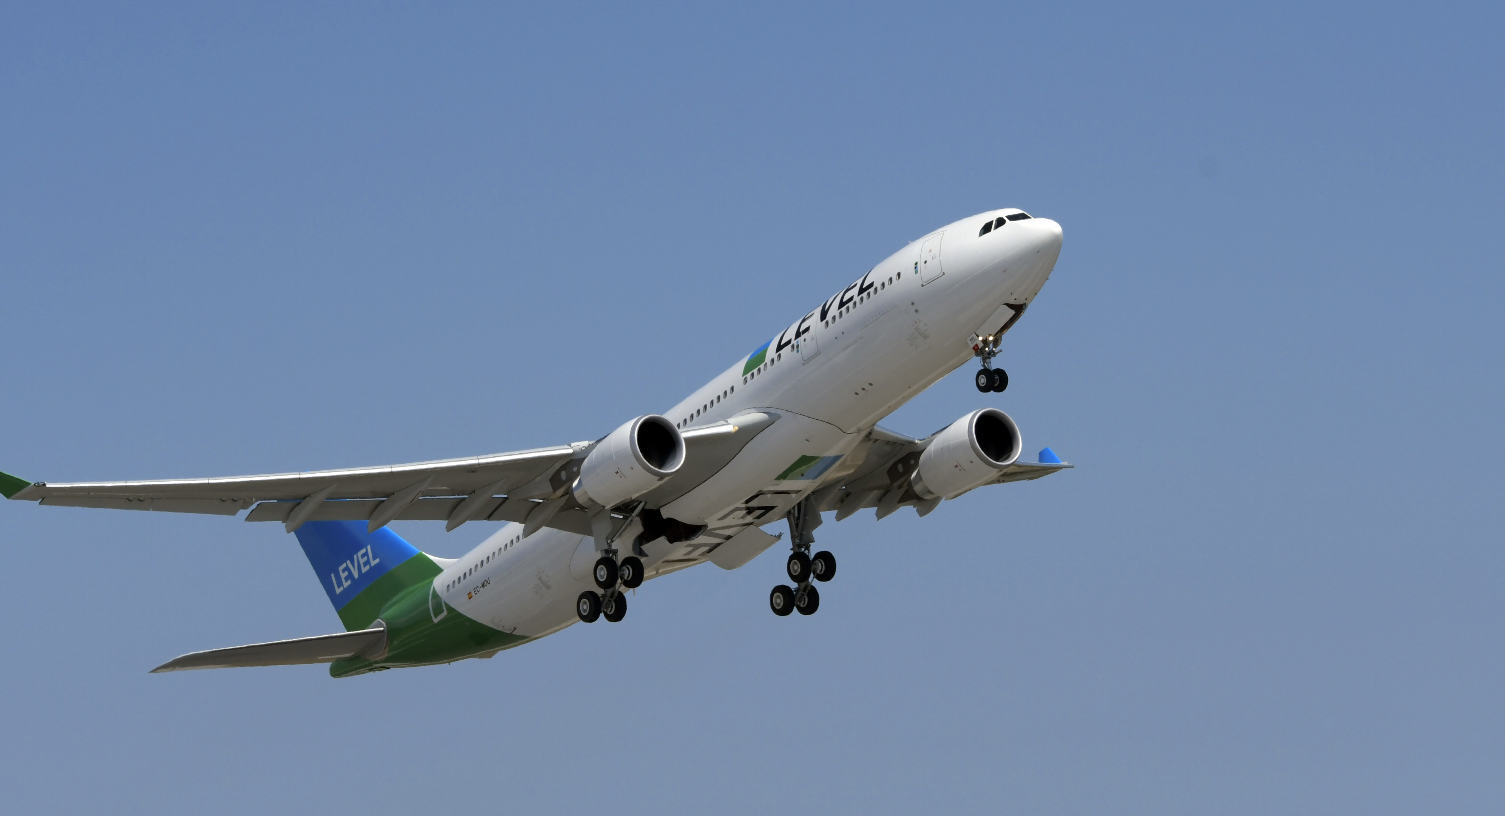 LEVEL prend livraison de son premier A330-200 "parisien"